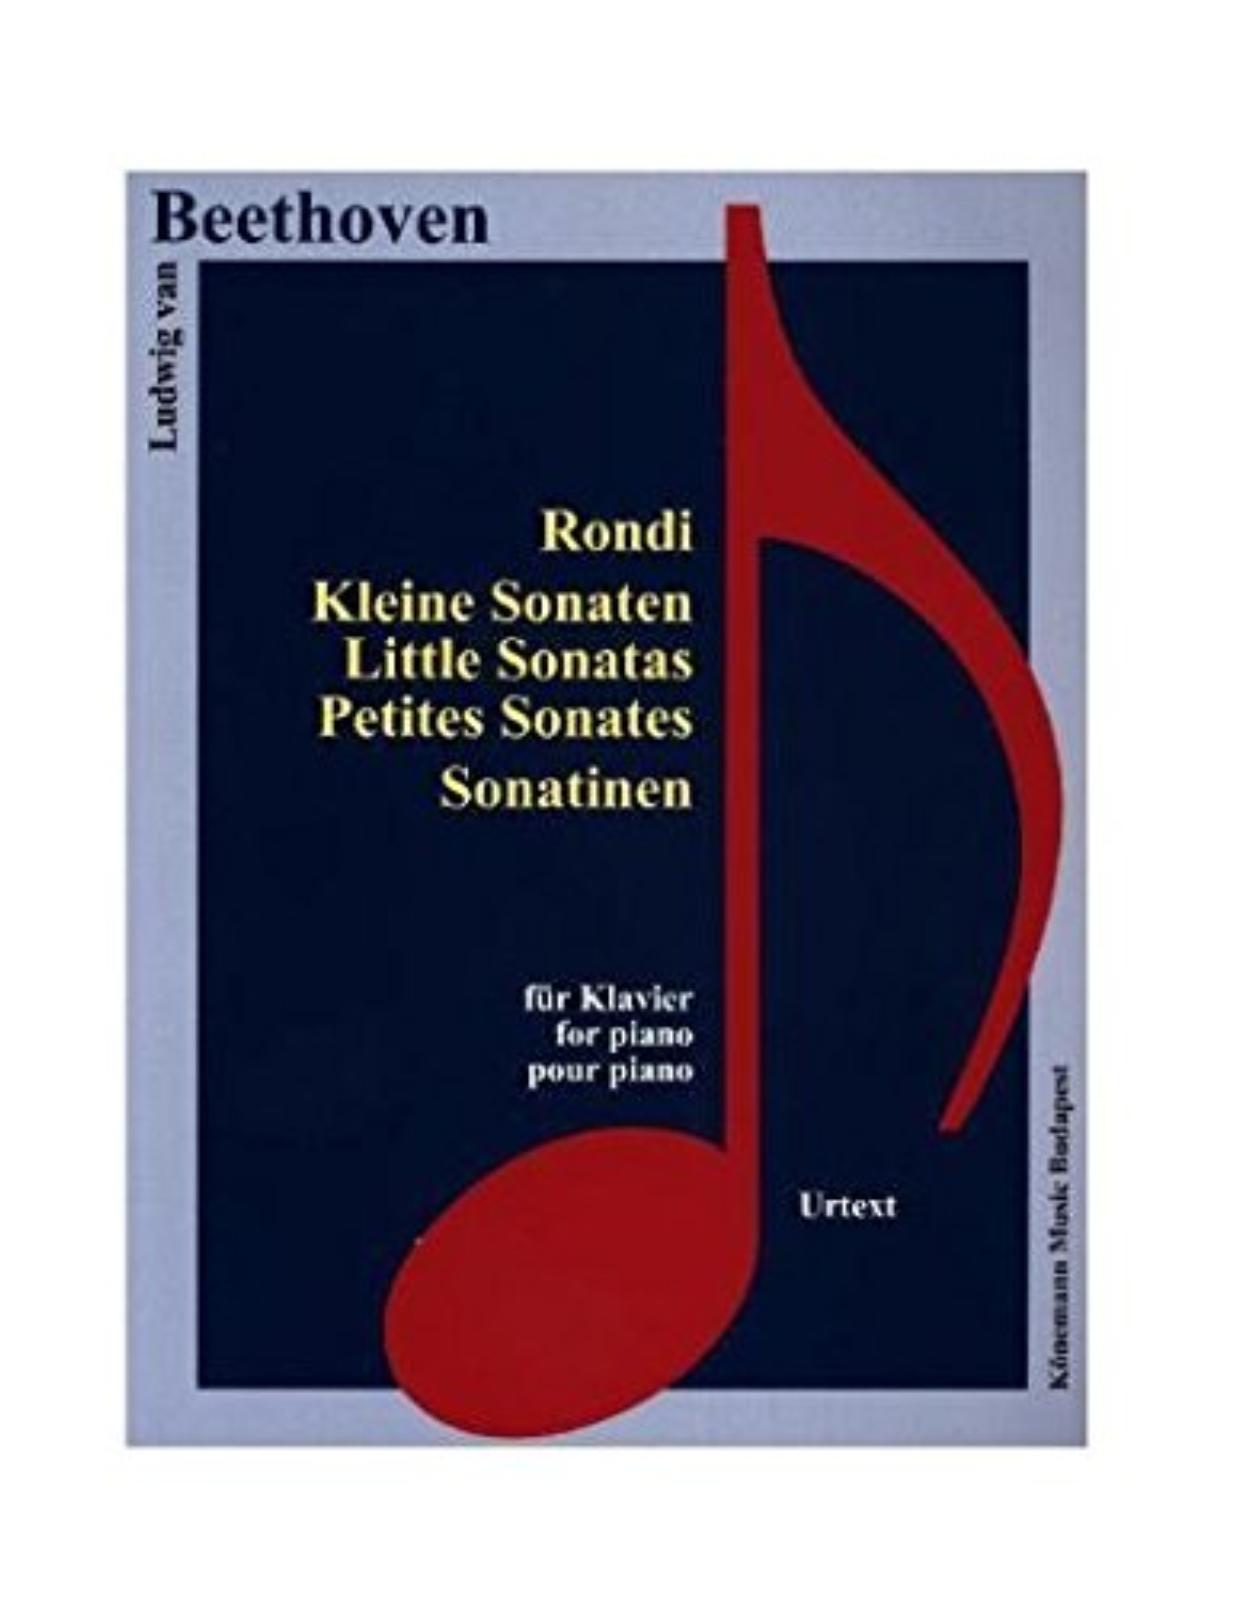 Beethoven, Rondi, Kl. Sonaten, Sonatinen